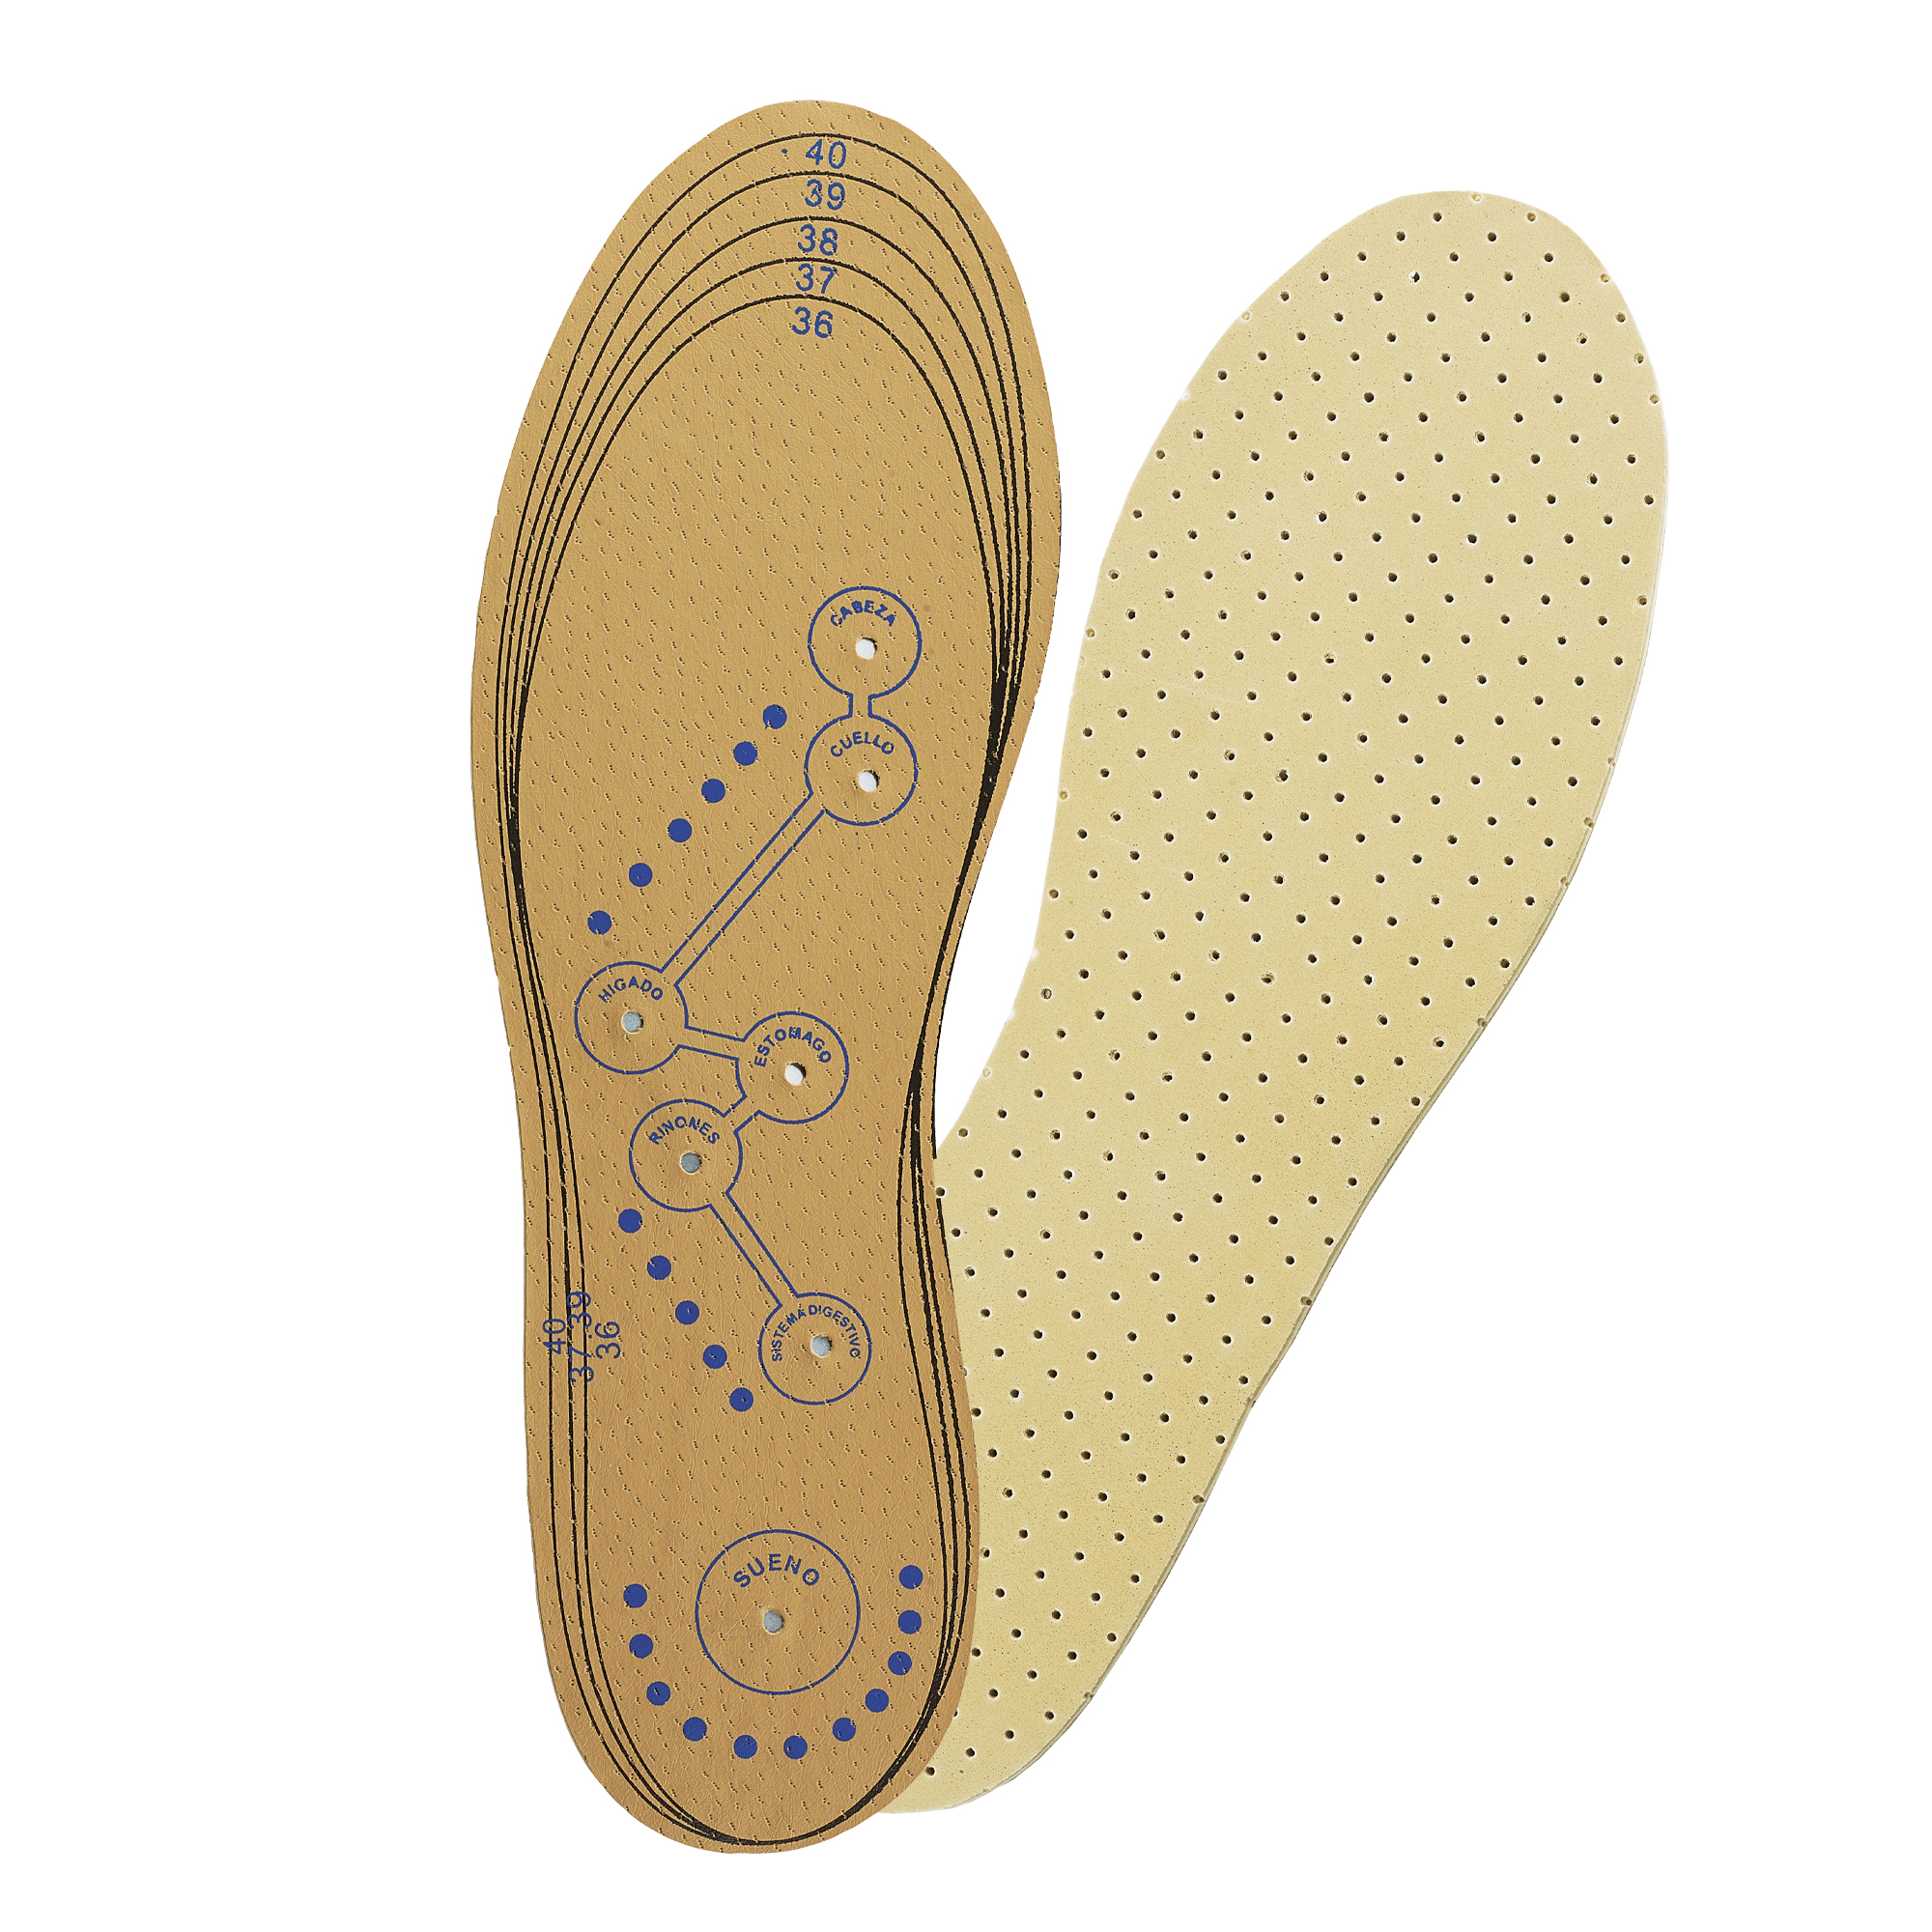 Лучшие стельки для обуви. Магнитные стельки биомаг. Nikken стельки. Стельки супинатор 46 размер. Стельки безразмерные.